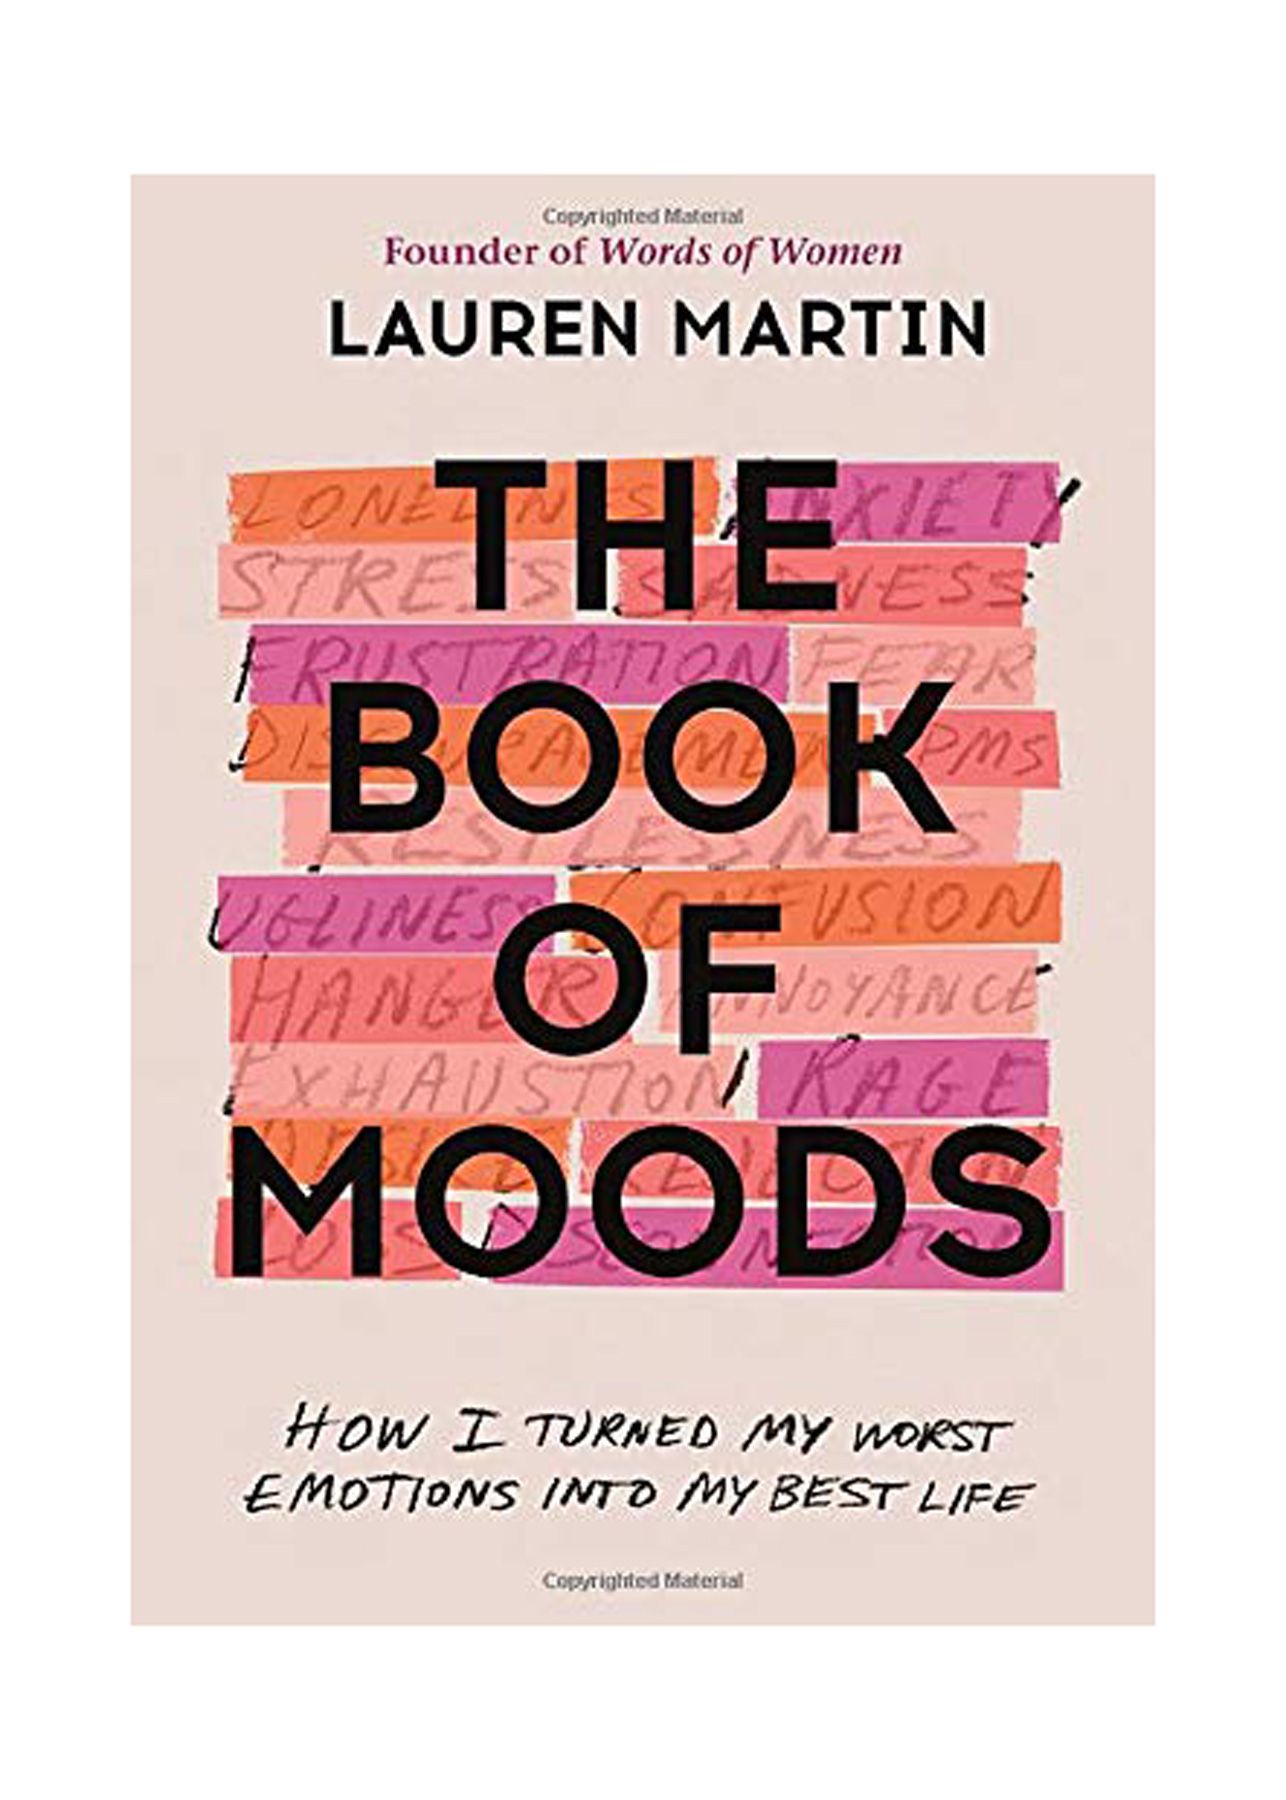 ספרים טובים לקריאה בשנות ה-20 שלך: 'ספר מצבי הרוח: איך הפכתי את הרגשות הגרועים ביותר שלי לחיים הטובים ביותר שלי' מאת לורן מרטין